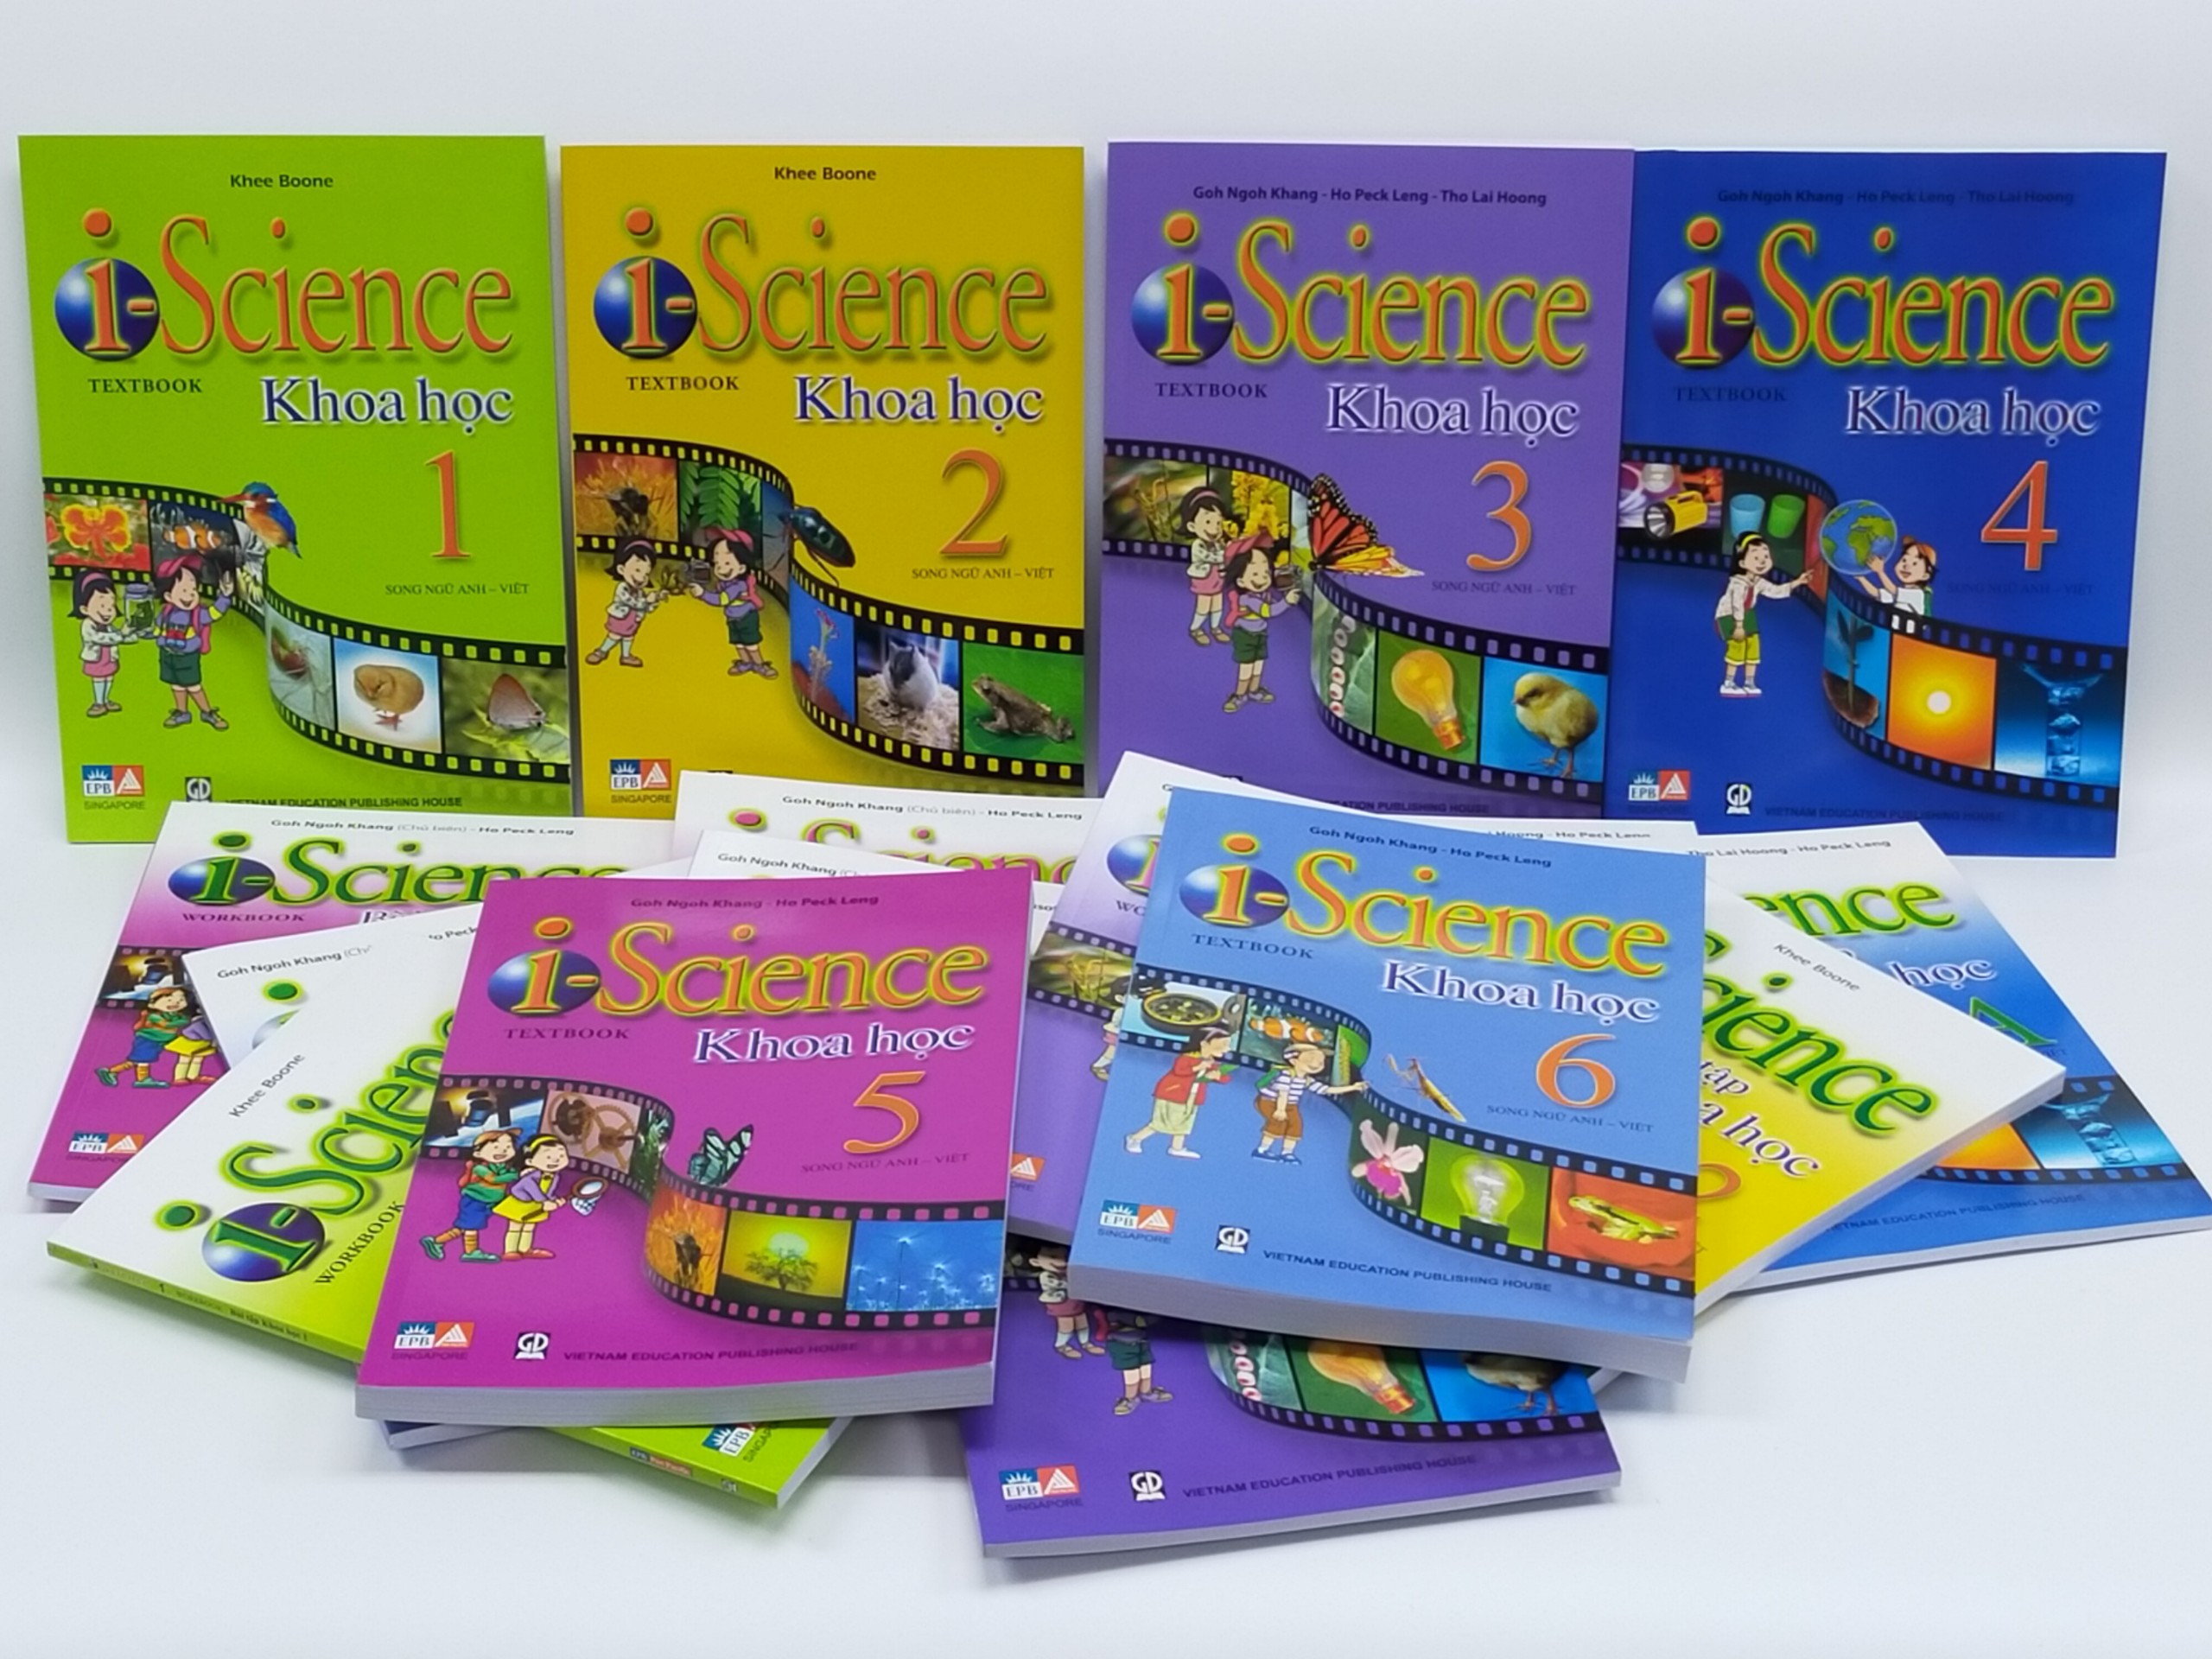 Giới thiệu bộ sách song ngữ Anh – Việt I-Science